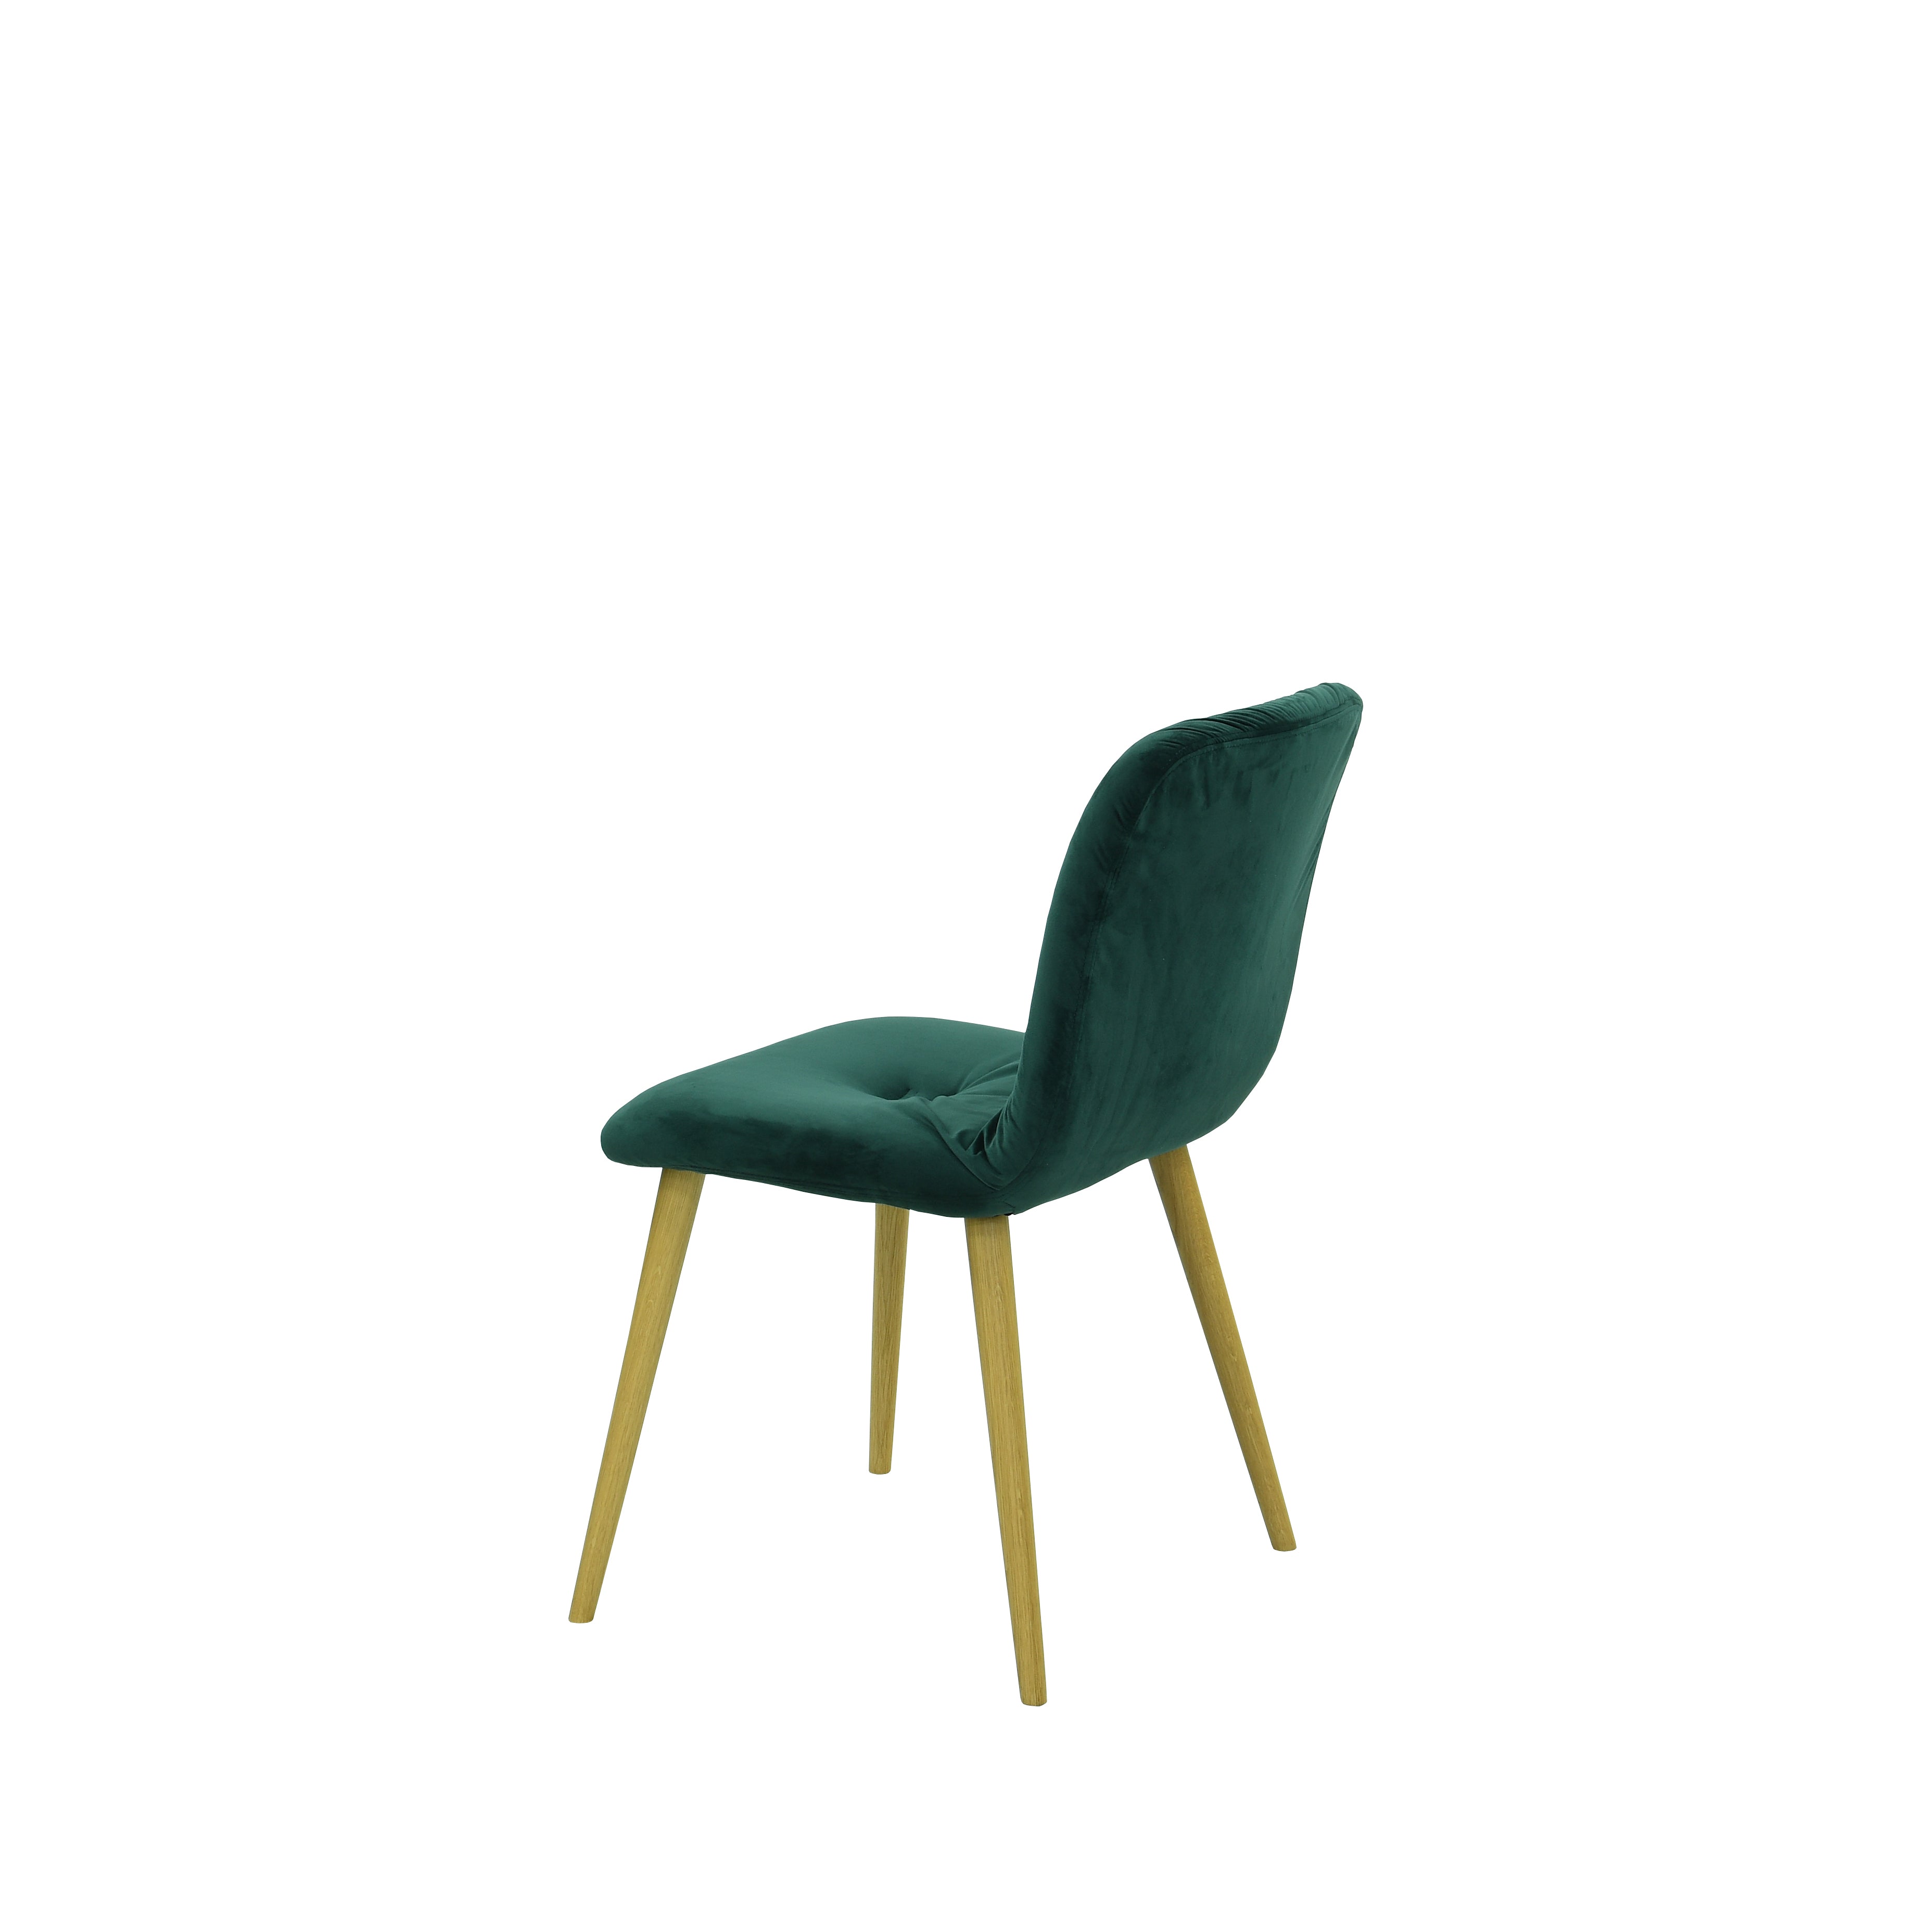 Scaun verde inchis din material sau piele ✔ model EVA